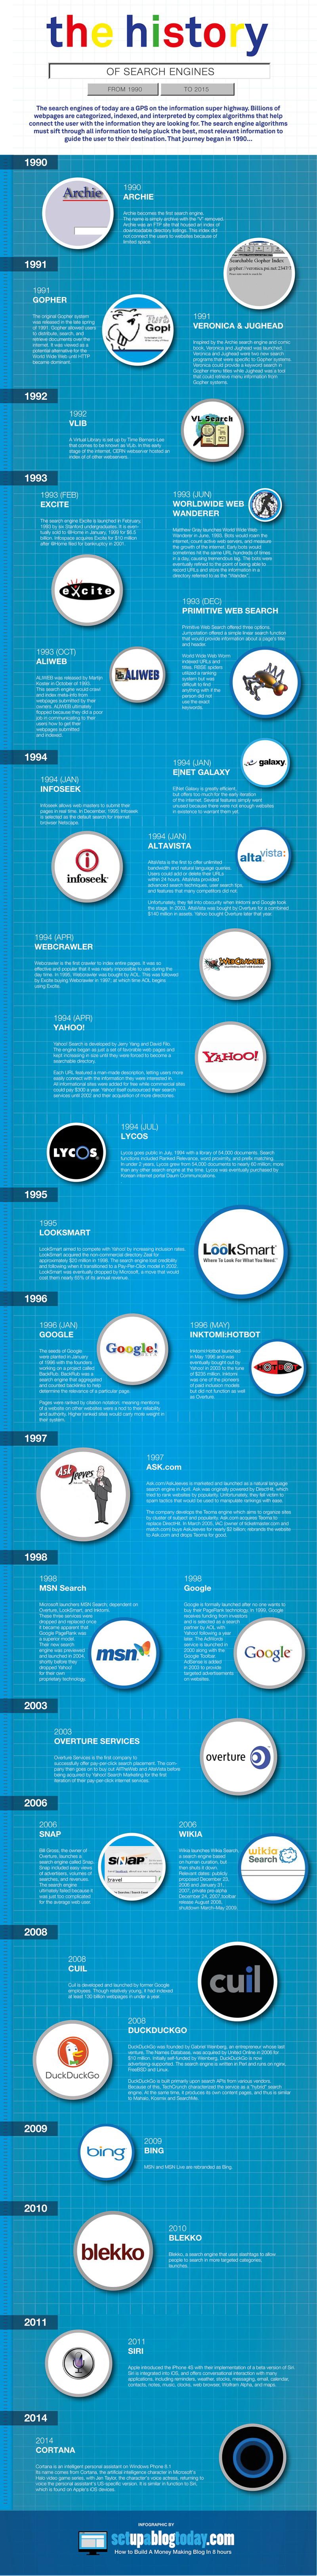 L'histoire des moteurs de recherche #infographie